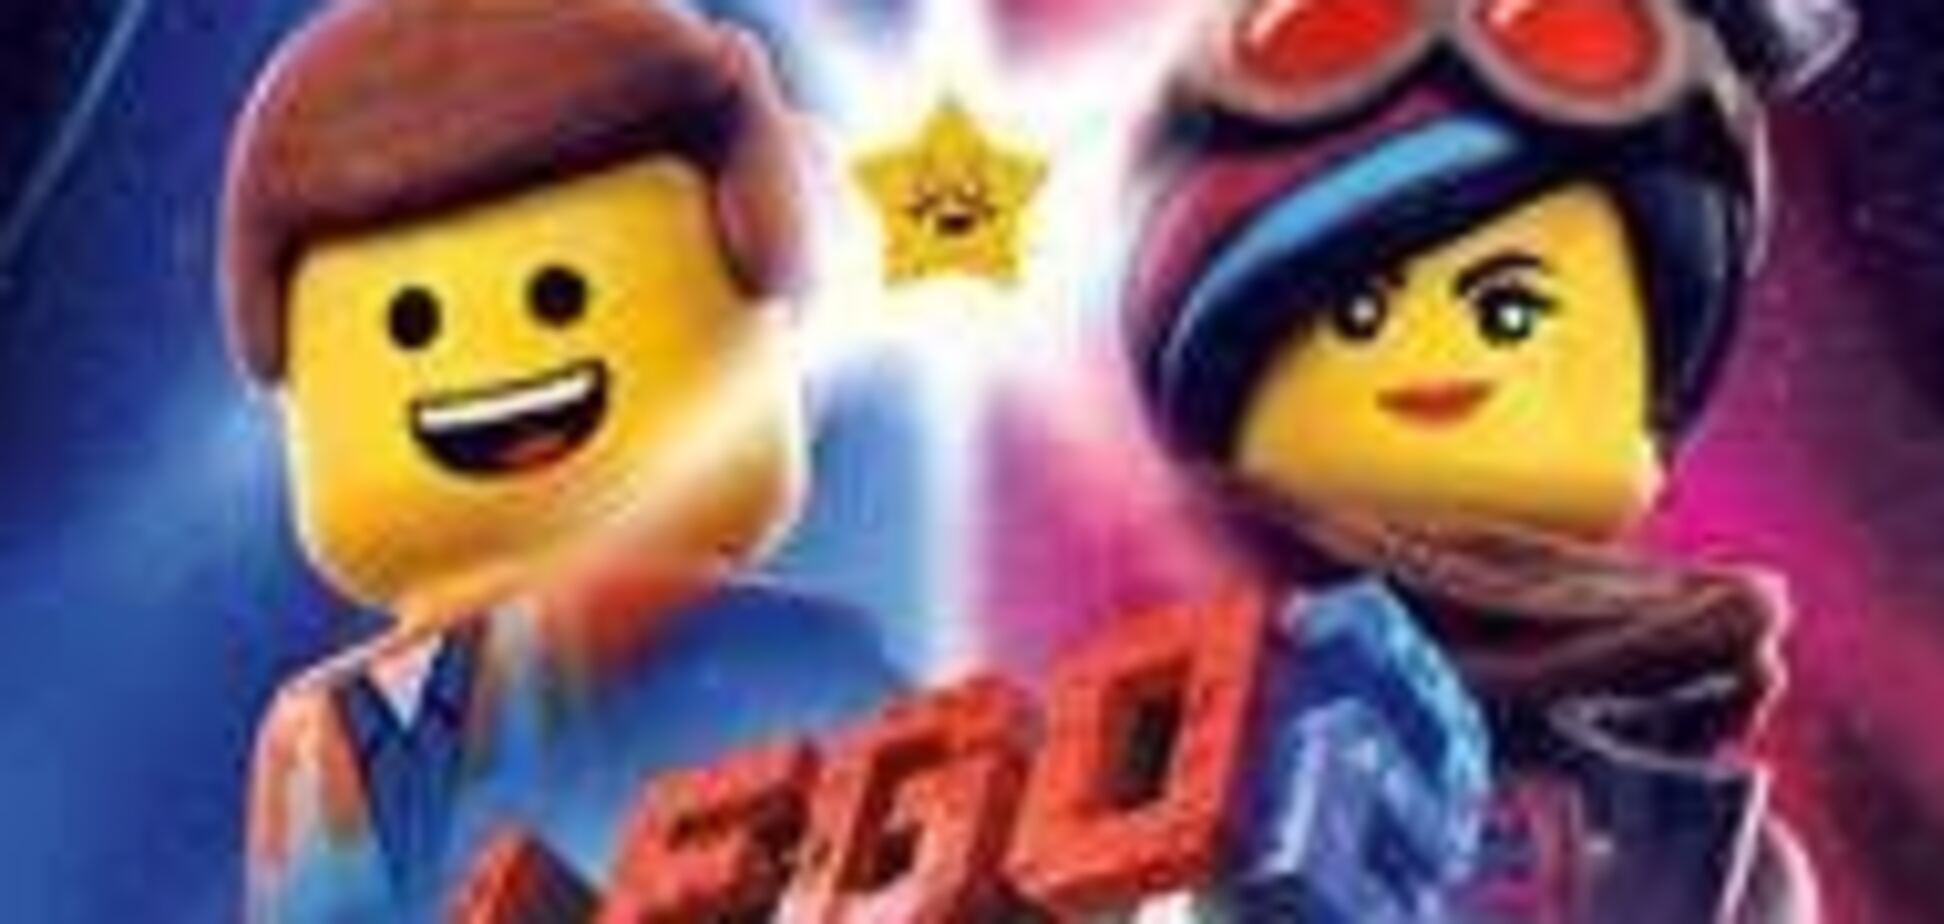 В Оскаре состоялась премьера Lego Фильм 2